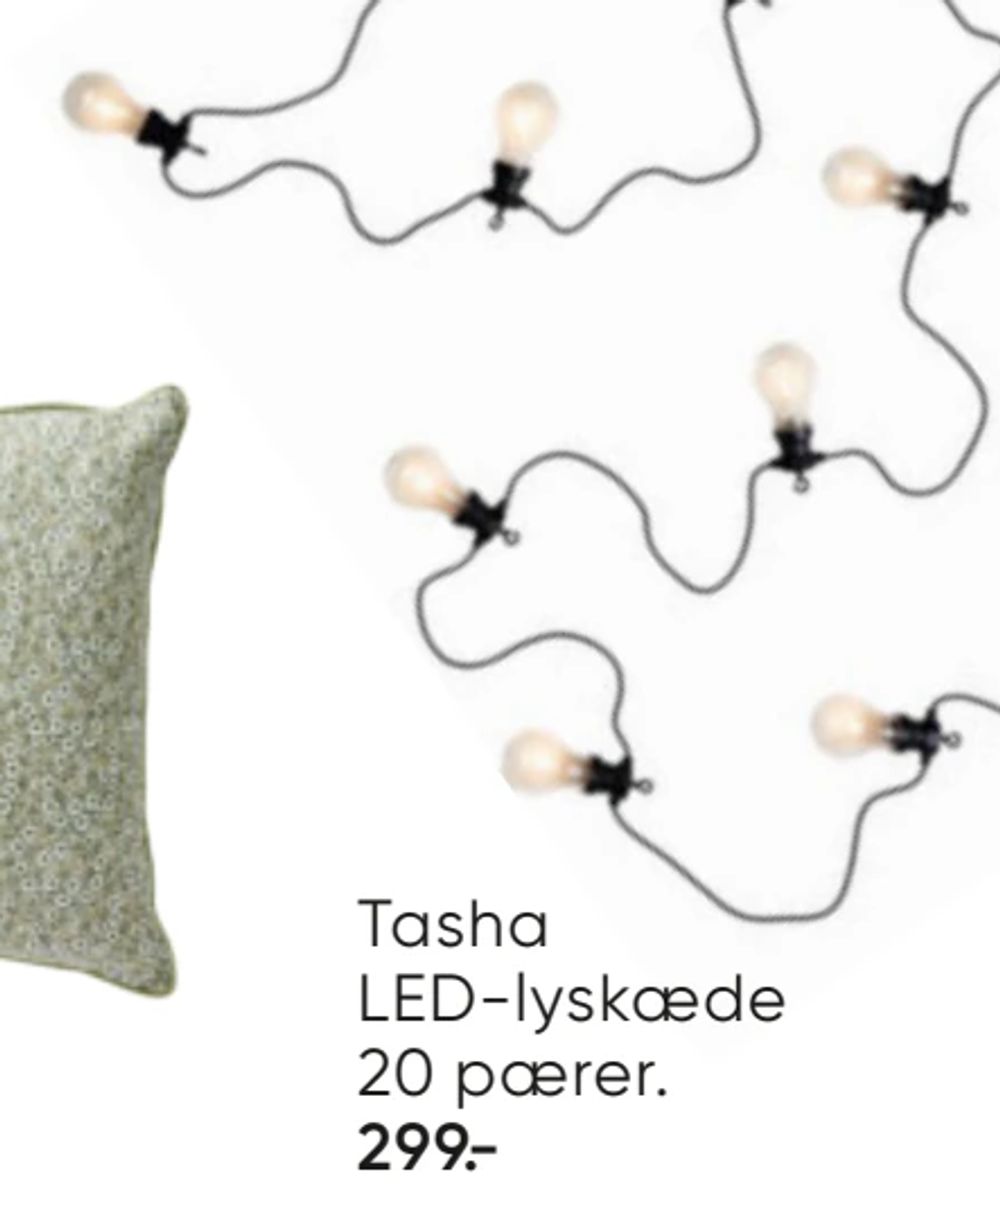 Tilbud på Tasha LED-lyskæde 20 pærer. fra Bilka til 299 kr.